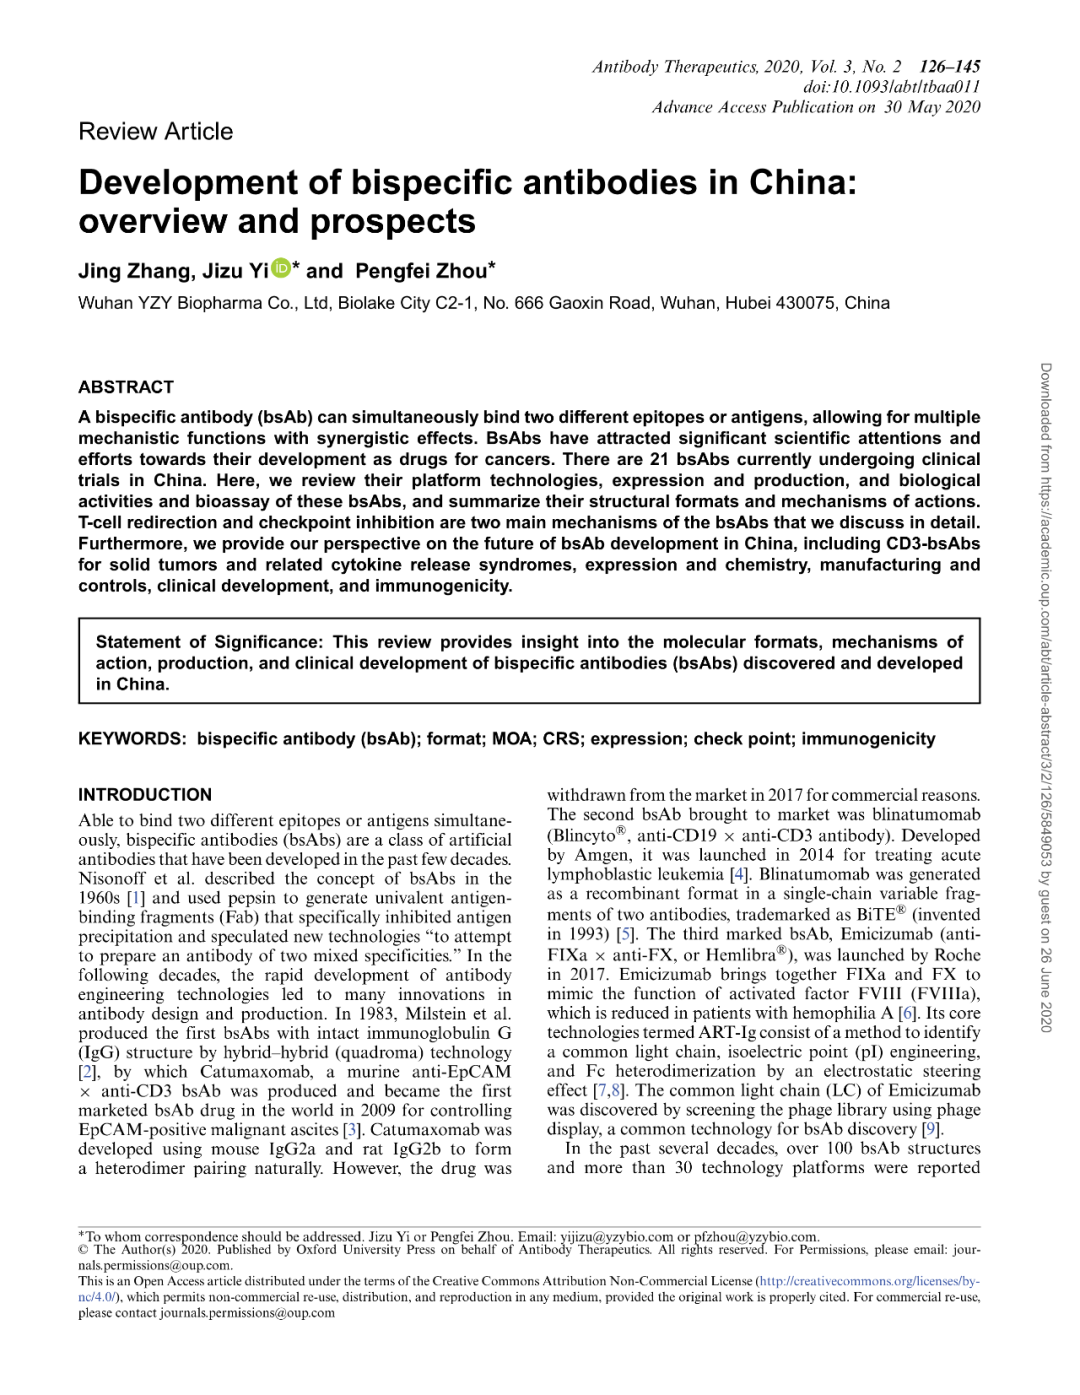 中国双特异性抗体的开发：<font color="red">概况</font>与展望